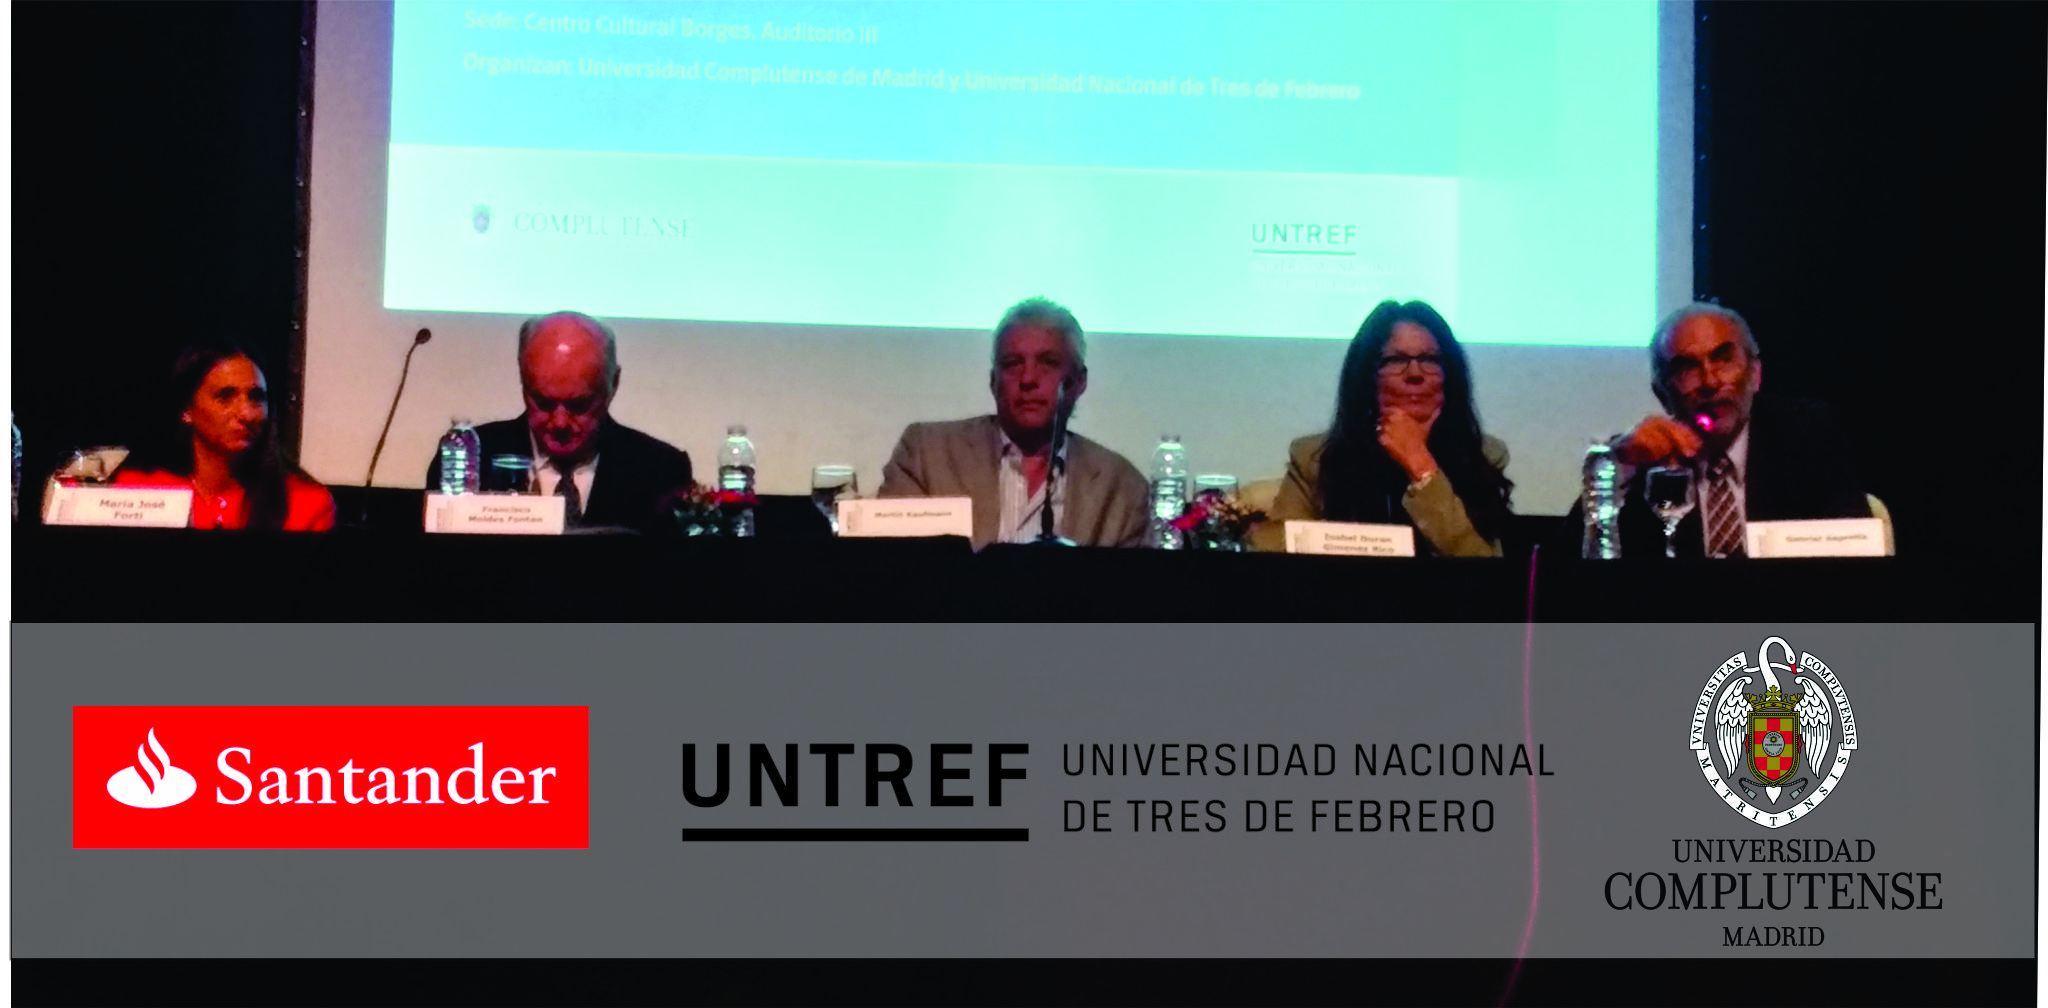 La Universidad Complutense de Madrid (UCM)  y la Universidad Nacional de Tres de Febrero (UNTREF) juntas en un trabajo de cooperación académica internacional